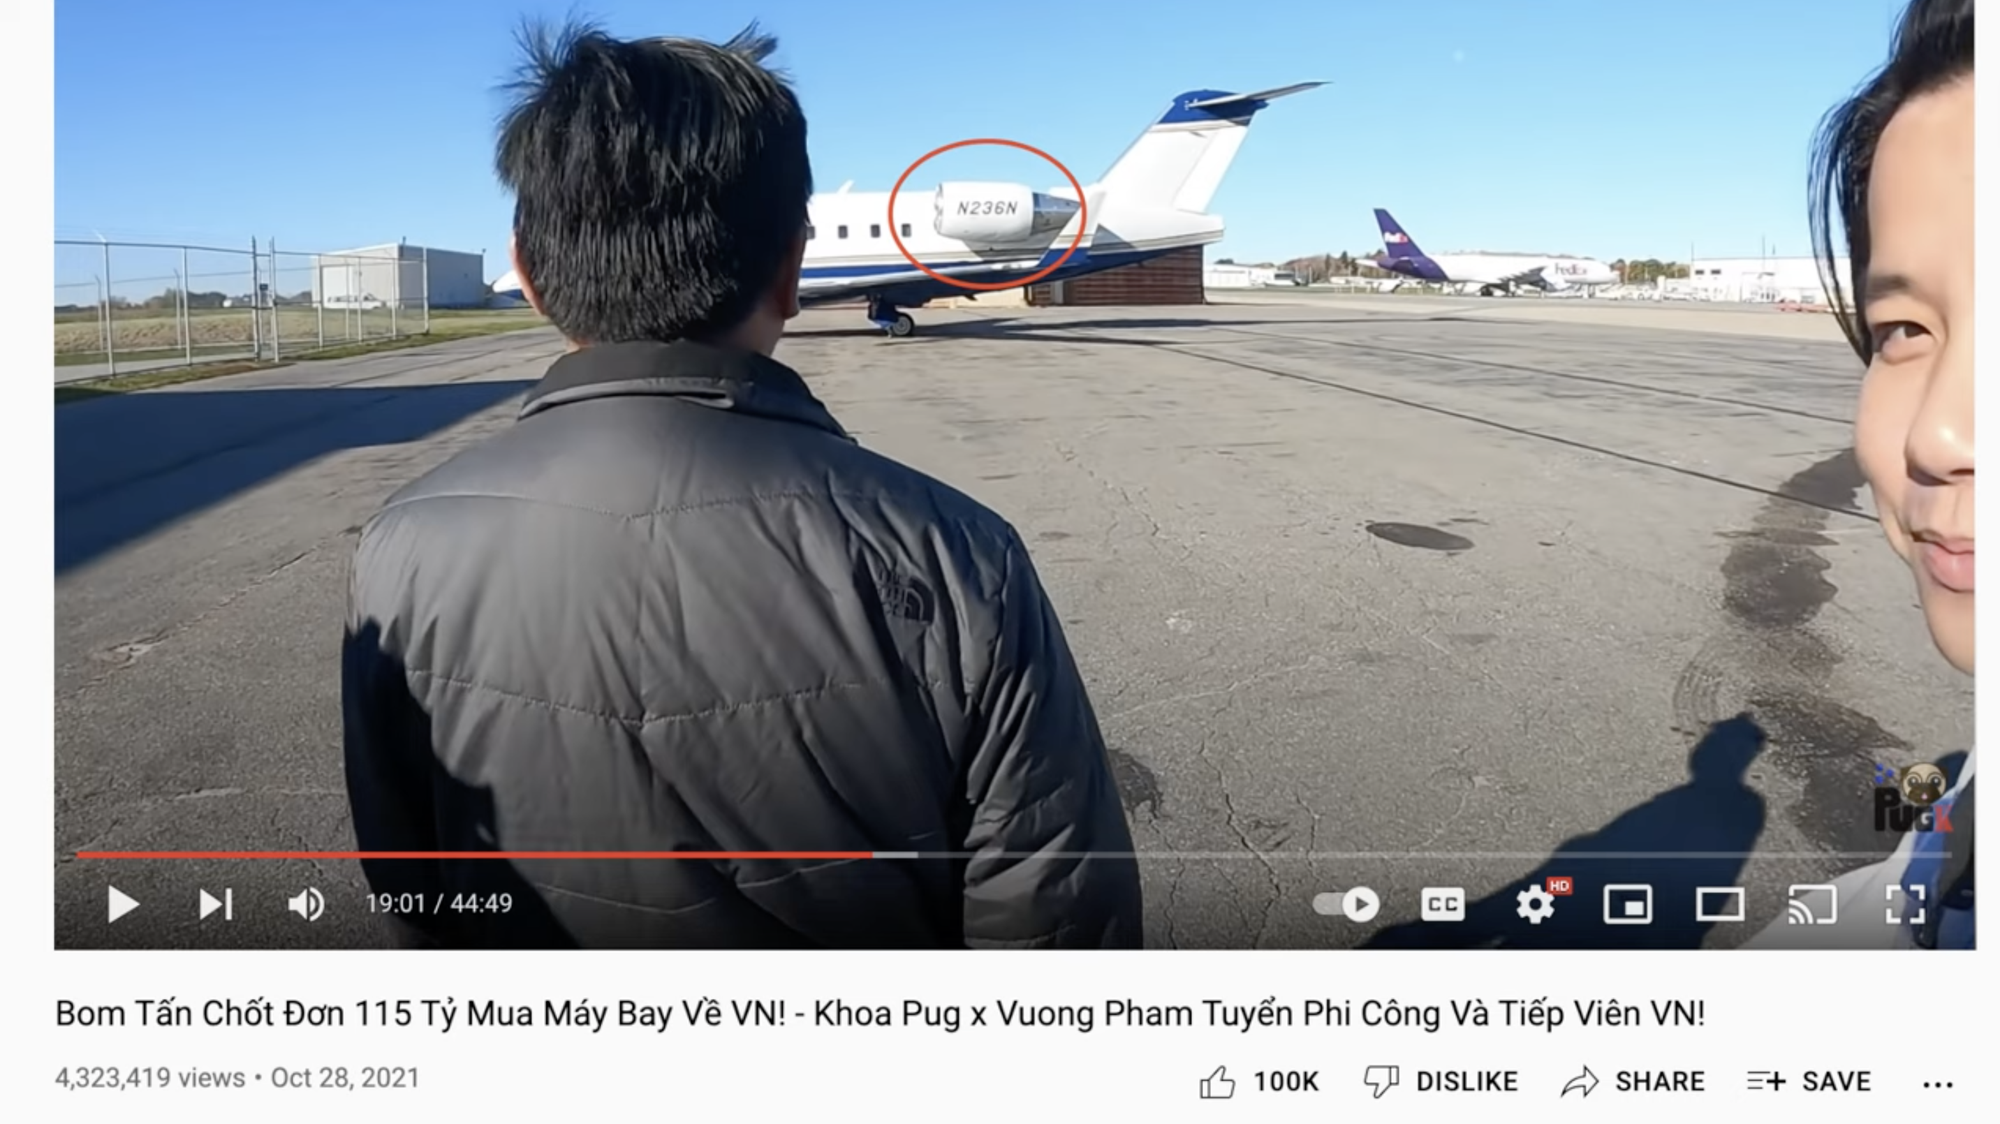 Biến chồng biến: Khoa Pug bị tố lừa đảo trong vụ mua máy bay 115 tỷ cùng Vương Phạm-4